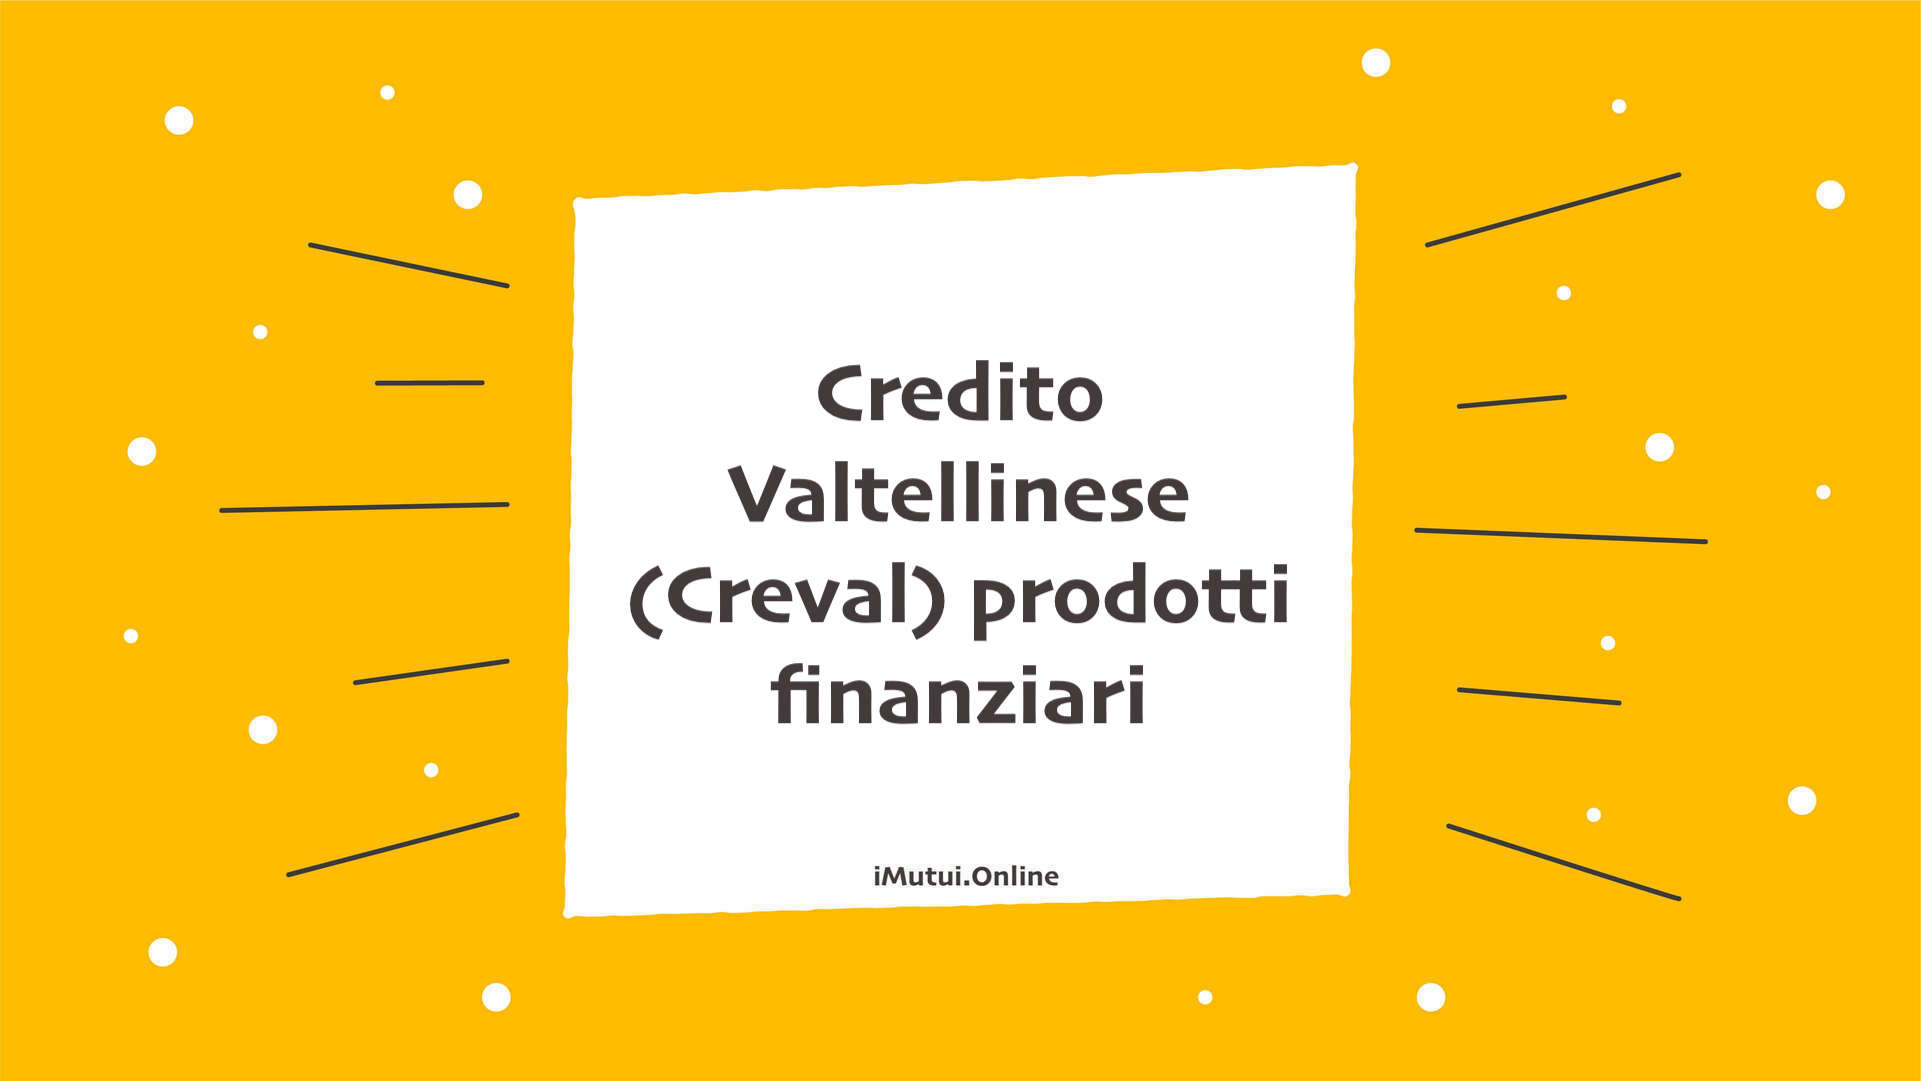 Credito Valtellinese (Creval) prodotti finanziari